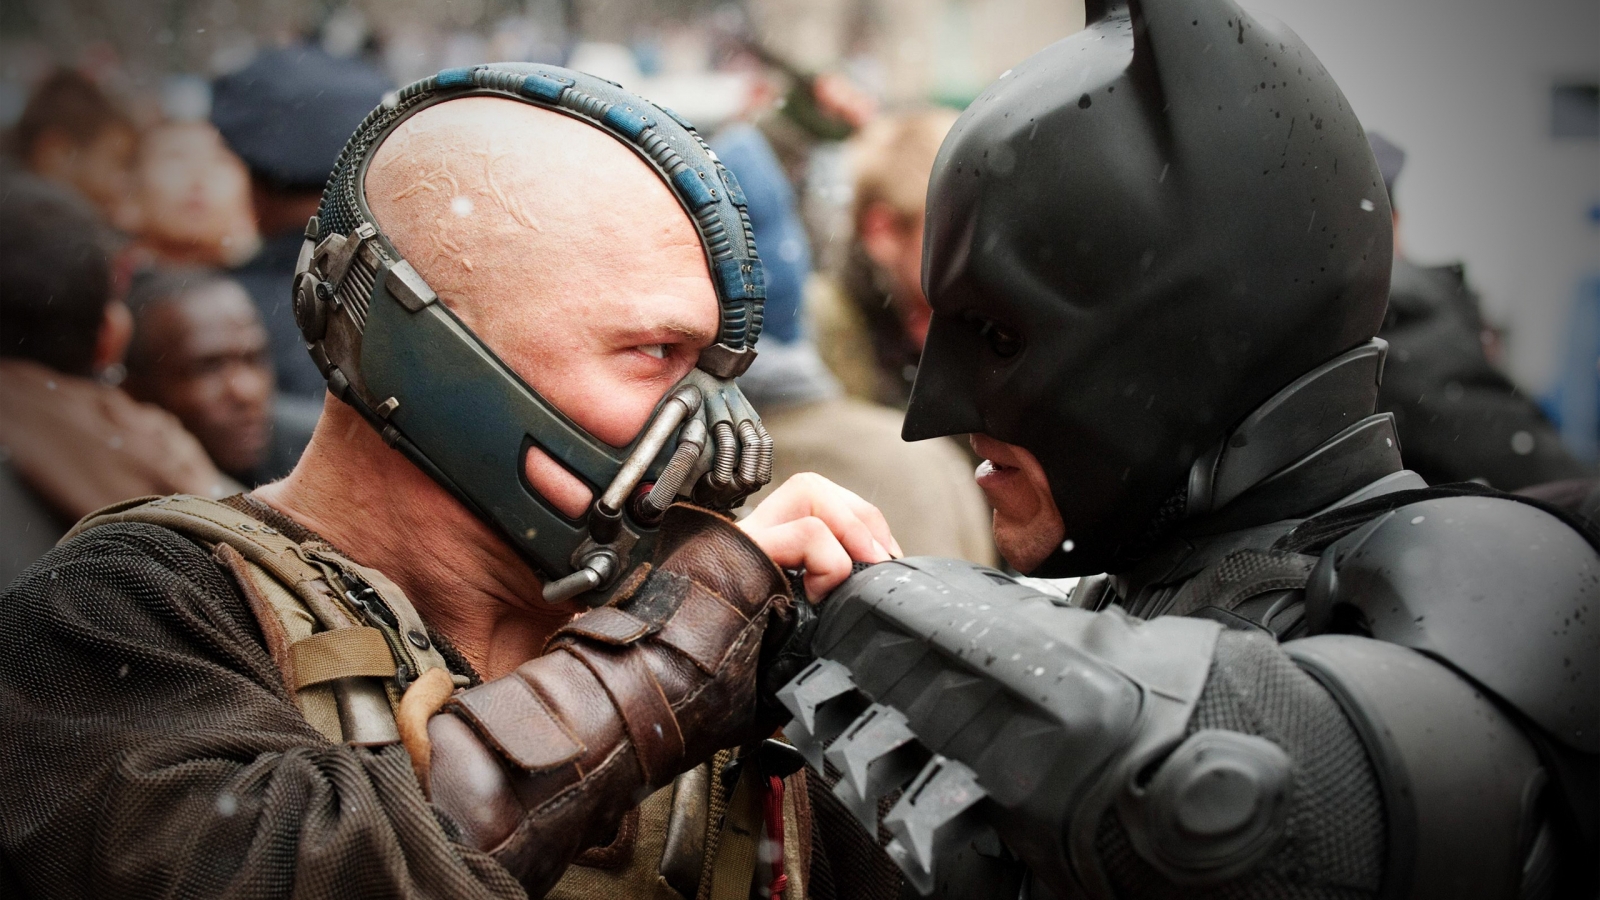 Bane vs Batman for 1600 x 900 HDTV resolution